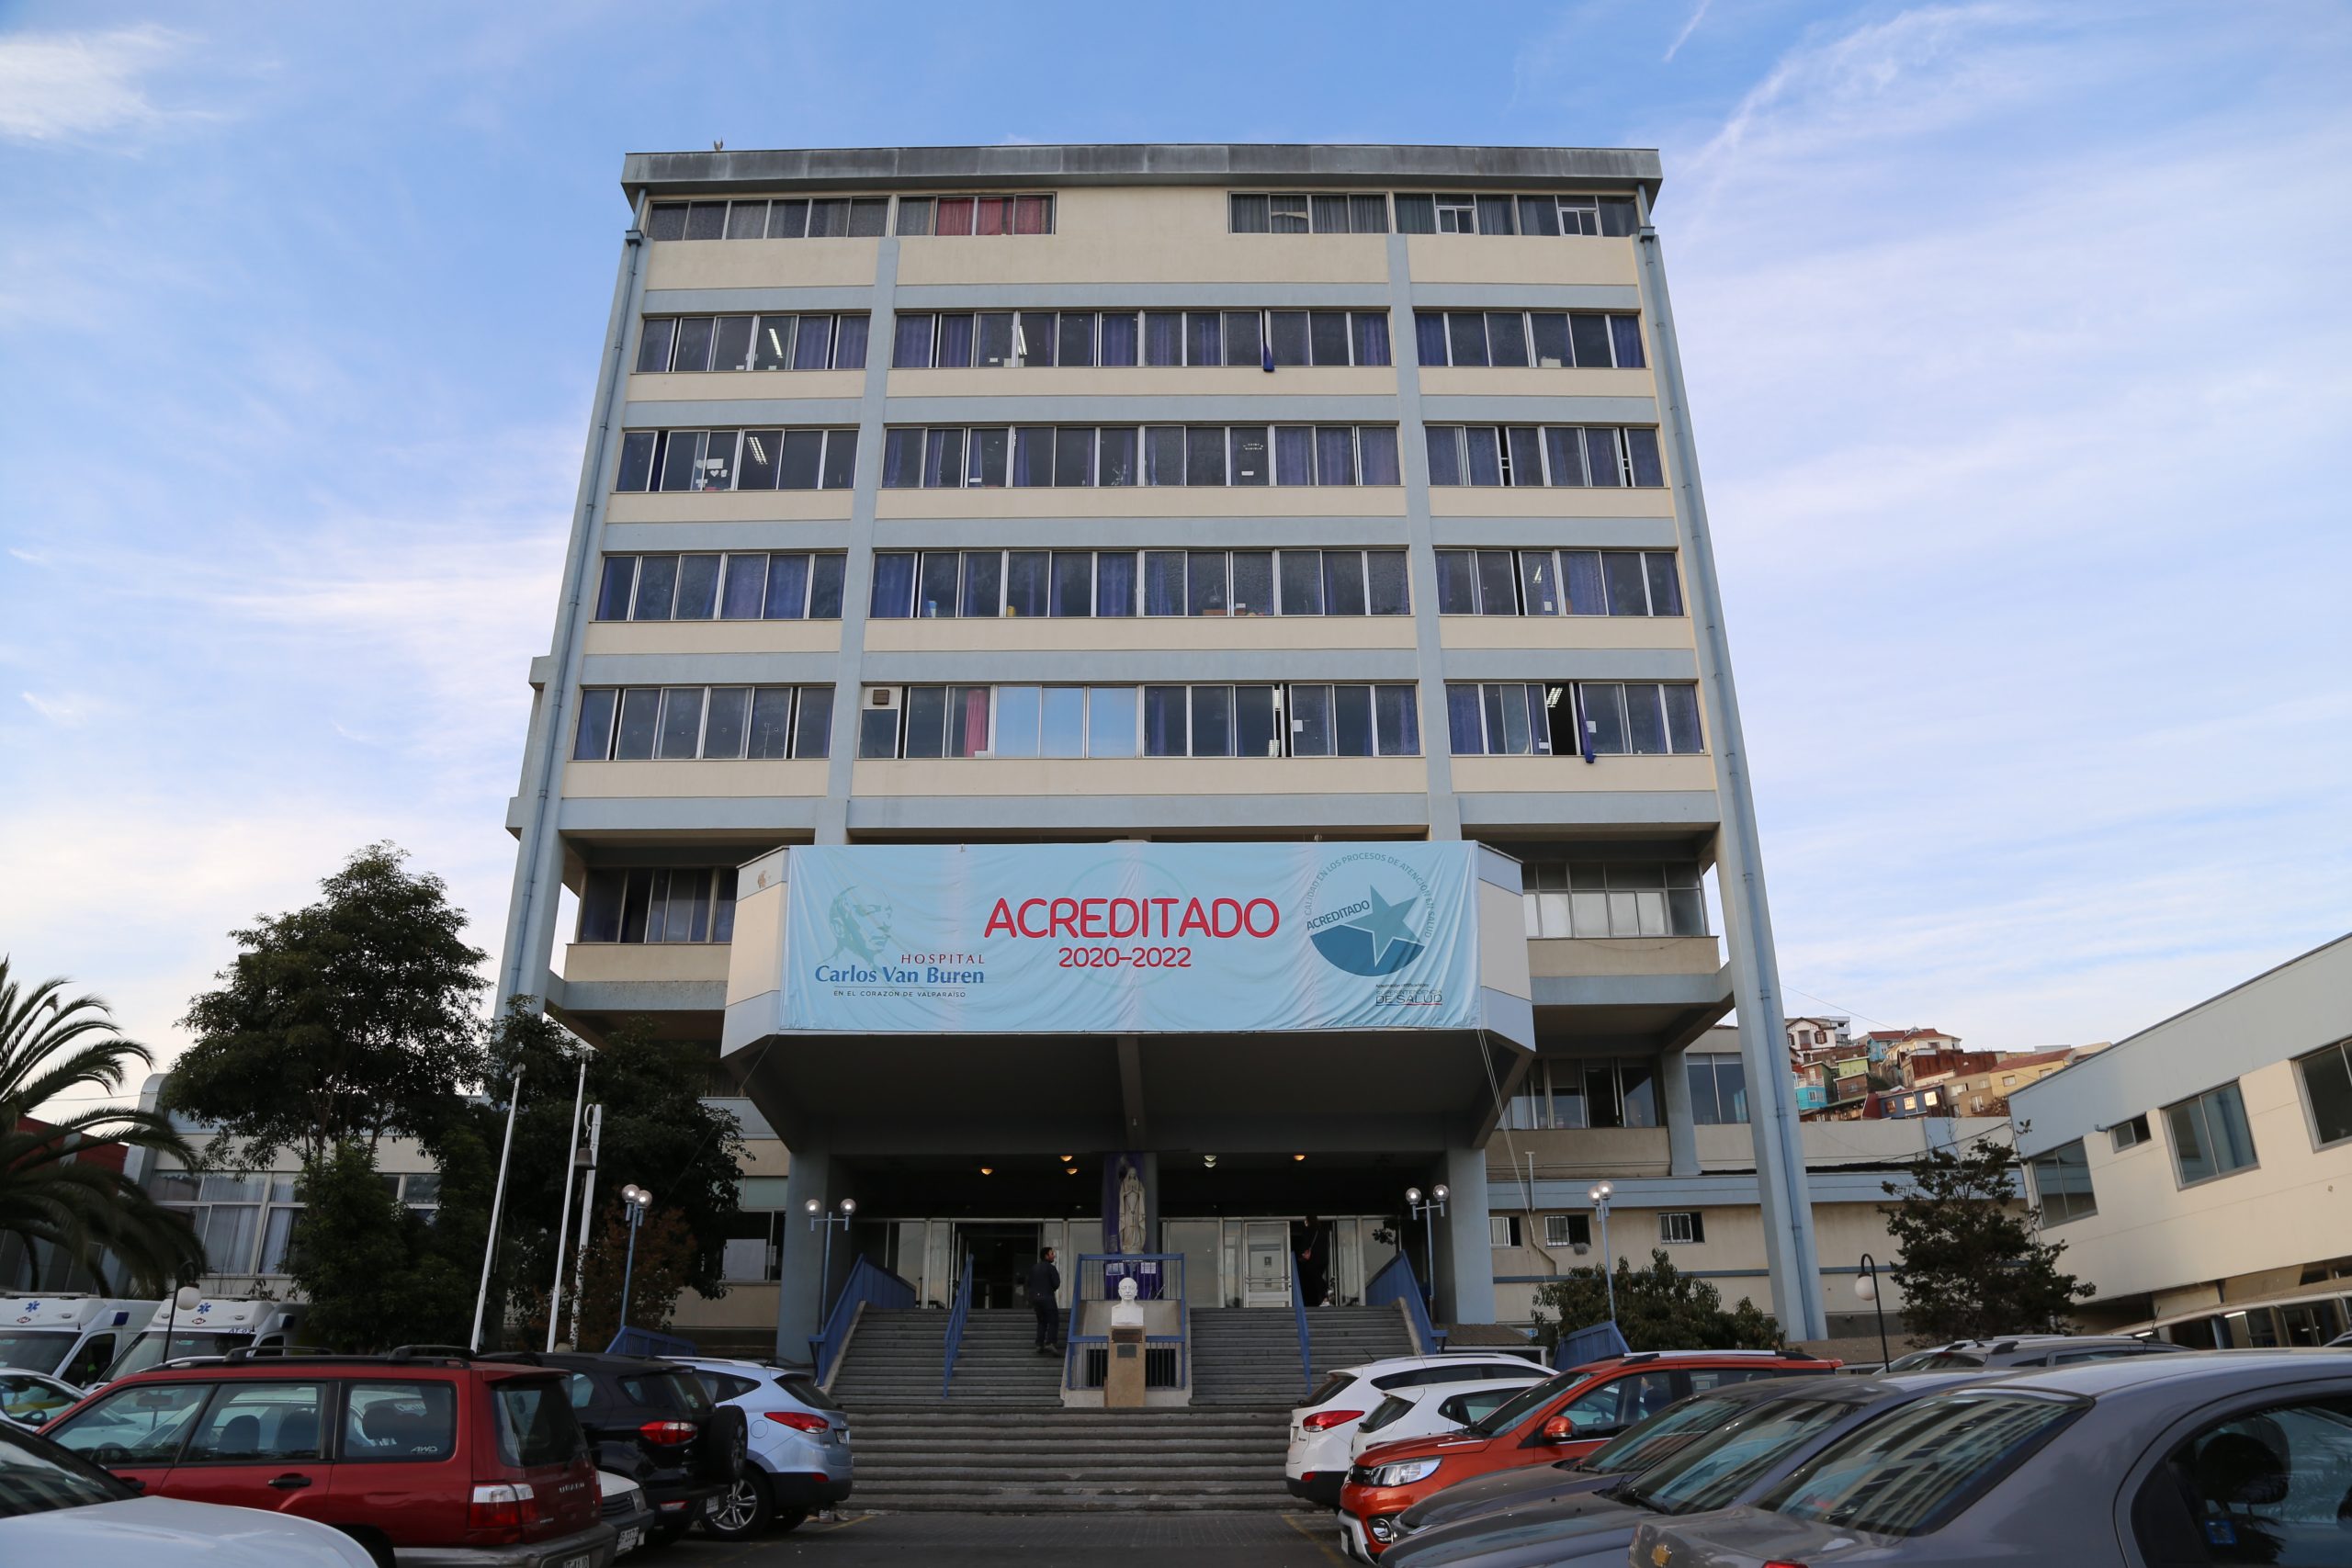 Trabajadoras del Hospital Carlos Van Buren de Valparaíso denuncian llevar más de 2 meses sin contrato ni sueldo